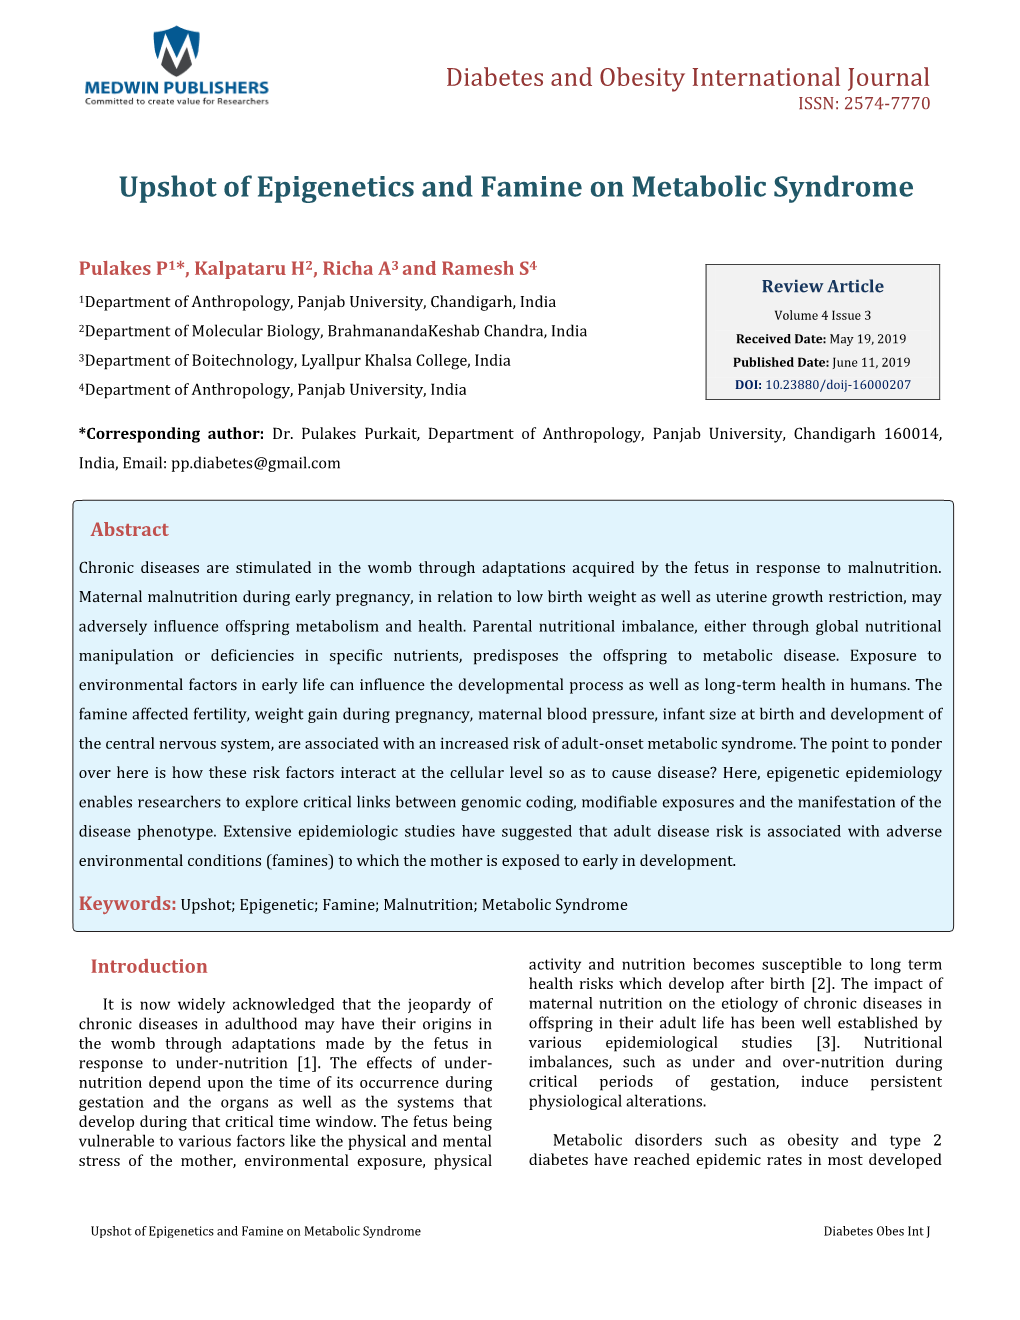 Pulakes P, Et Al. Upshot of Epigenetics and Famine on Metabolic Syndrome